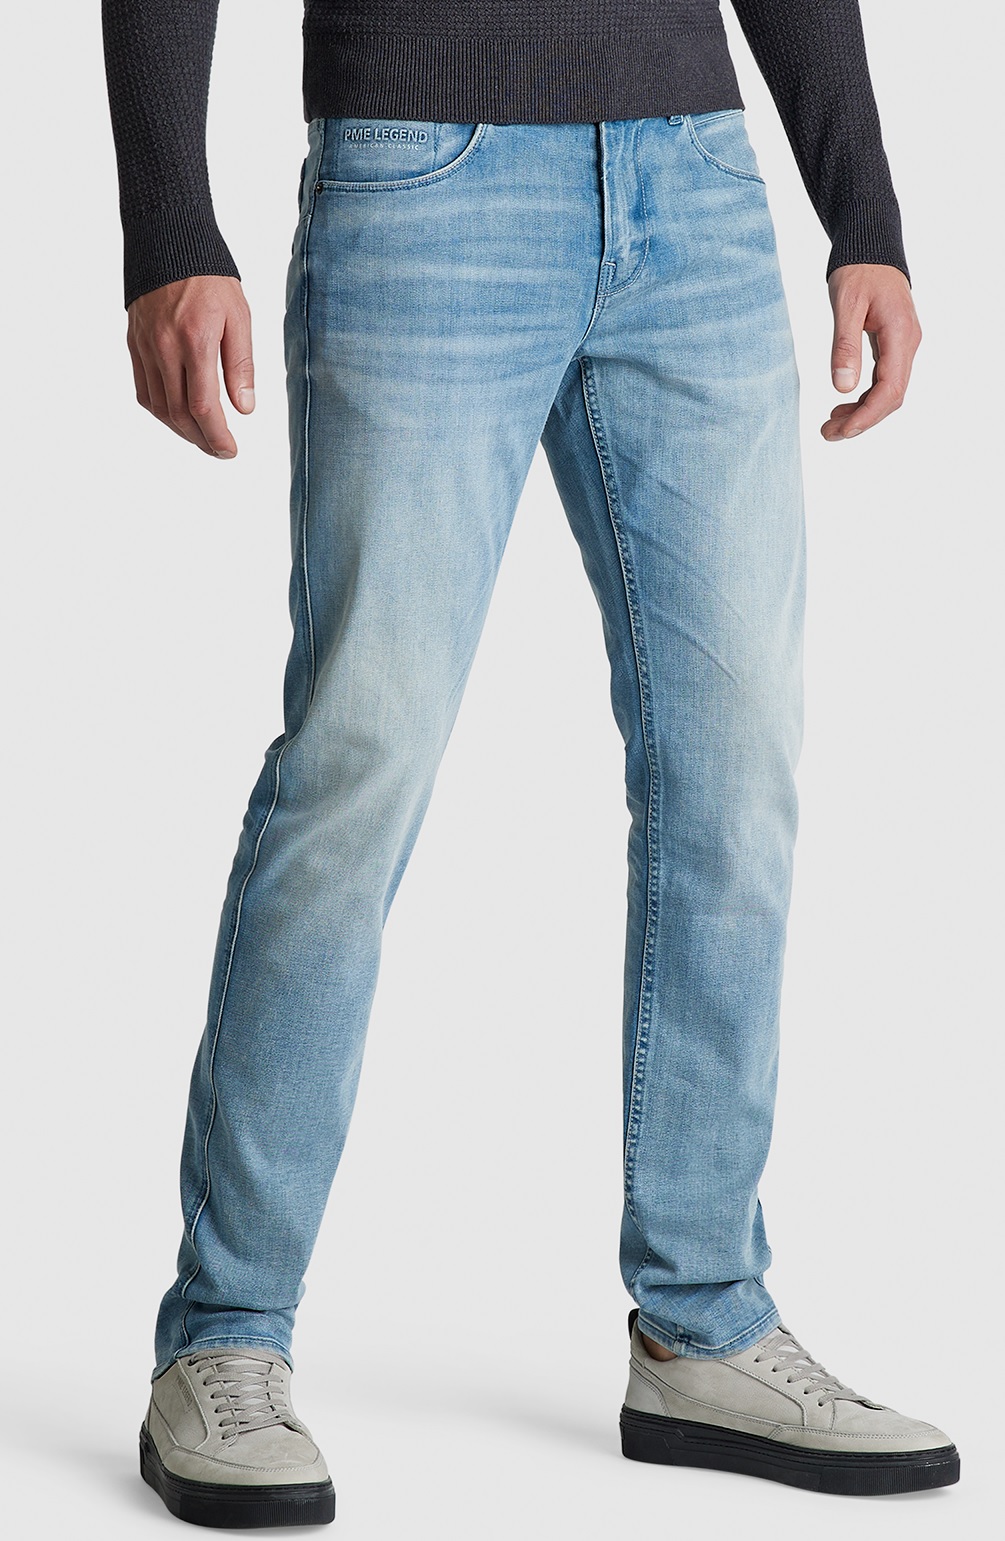 bank Deskundige Misleidend PME Legend Nightflight jeans b PTR120-BCL